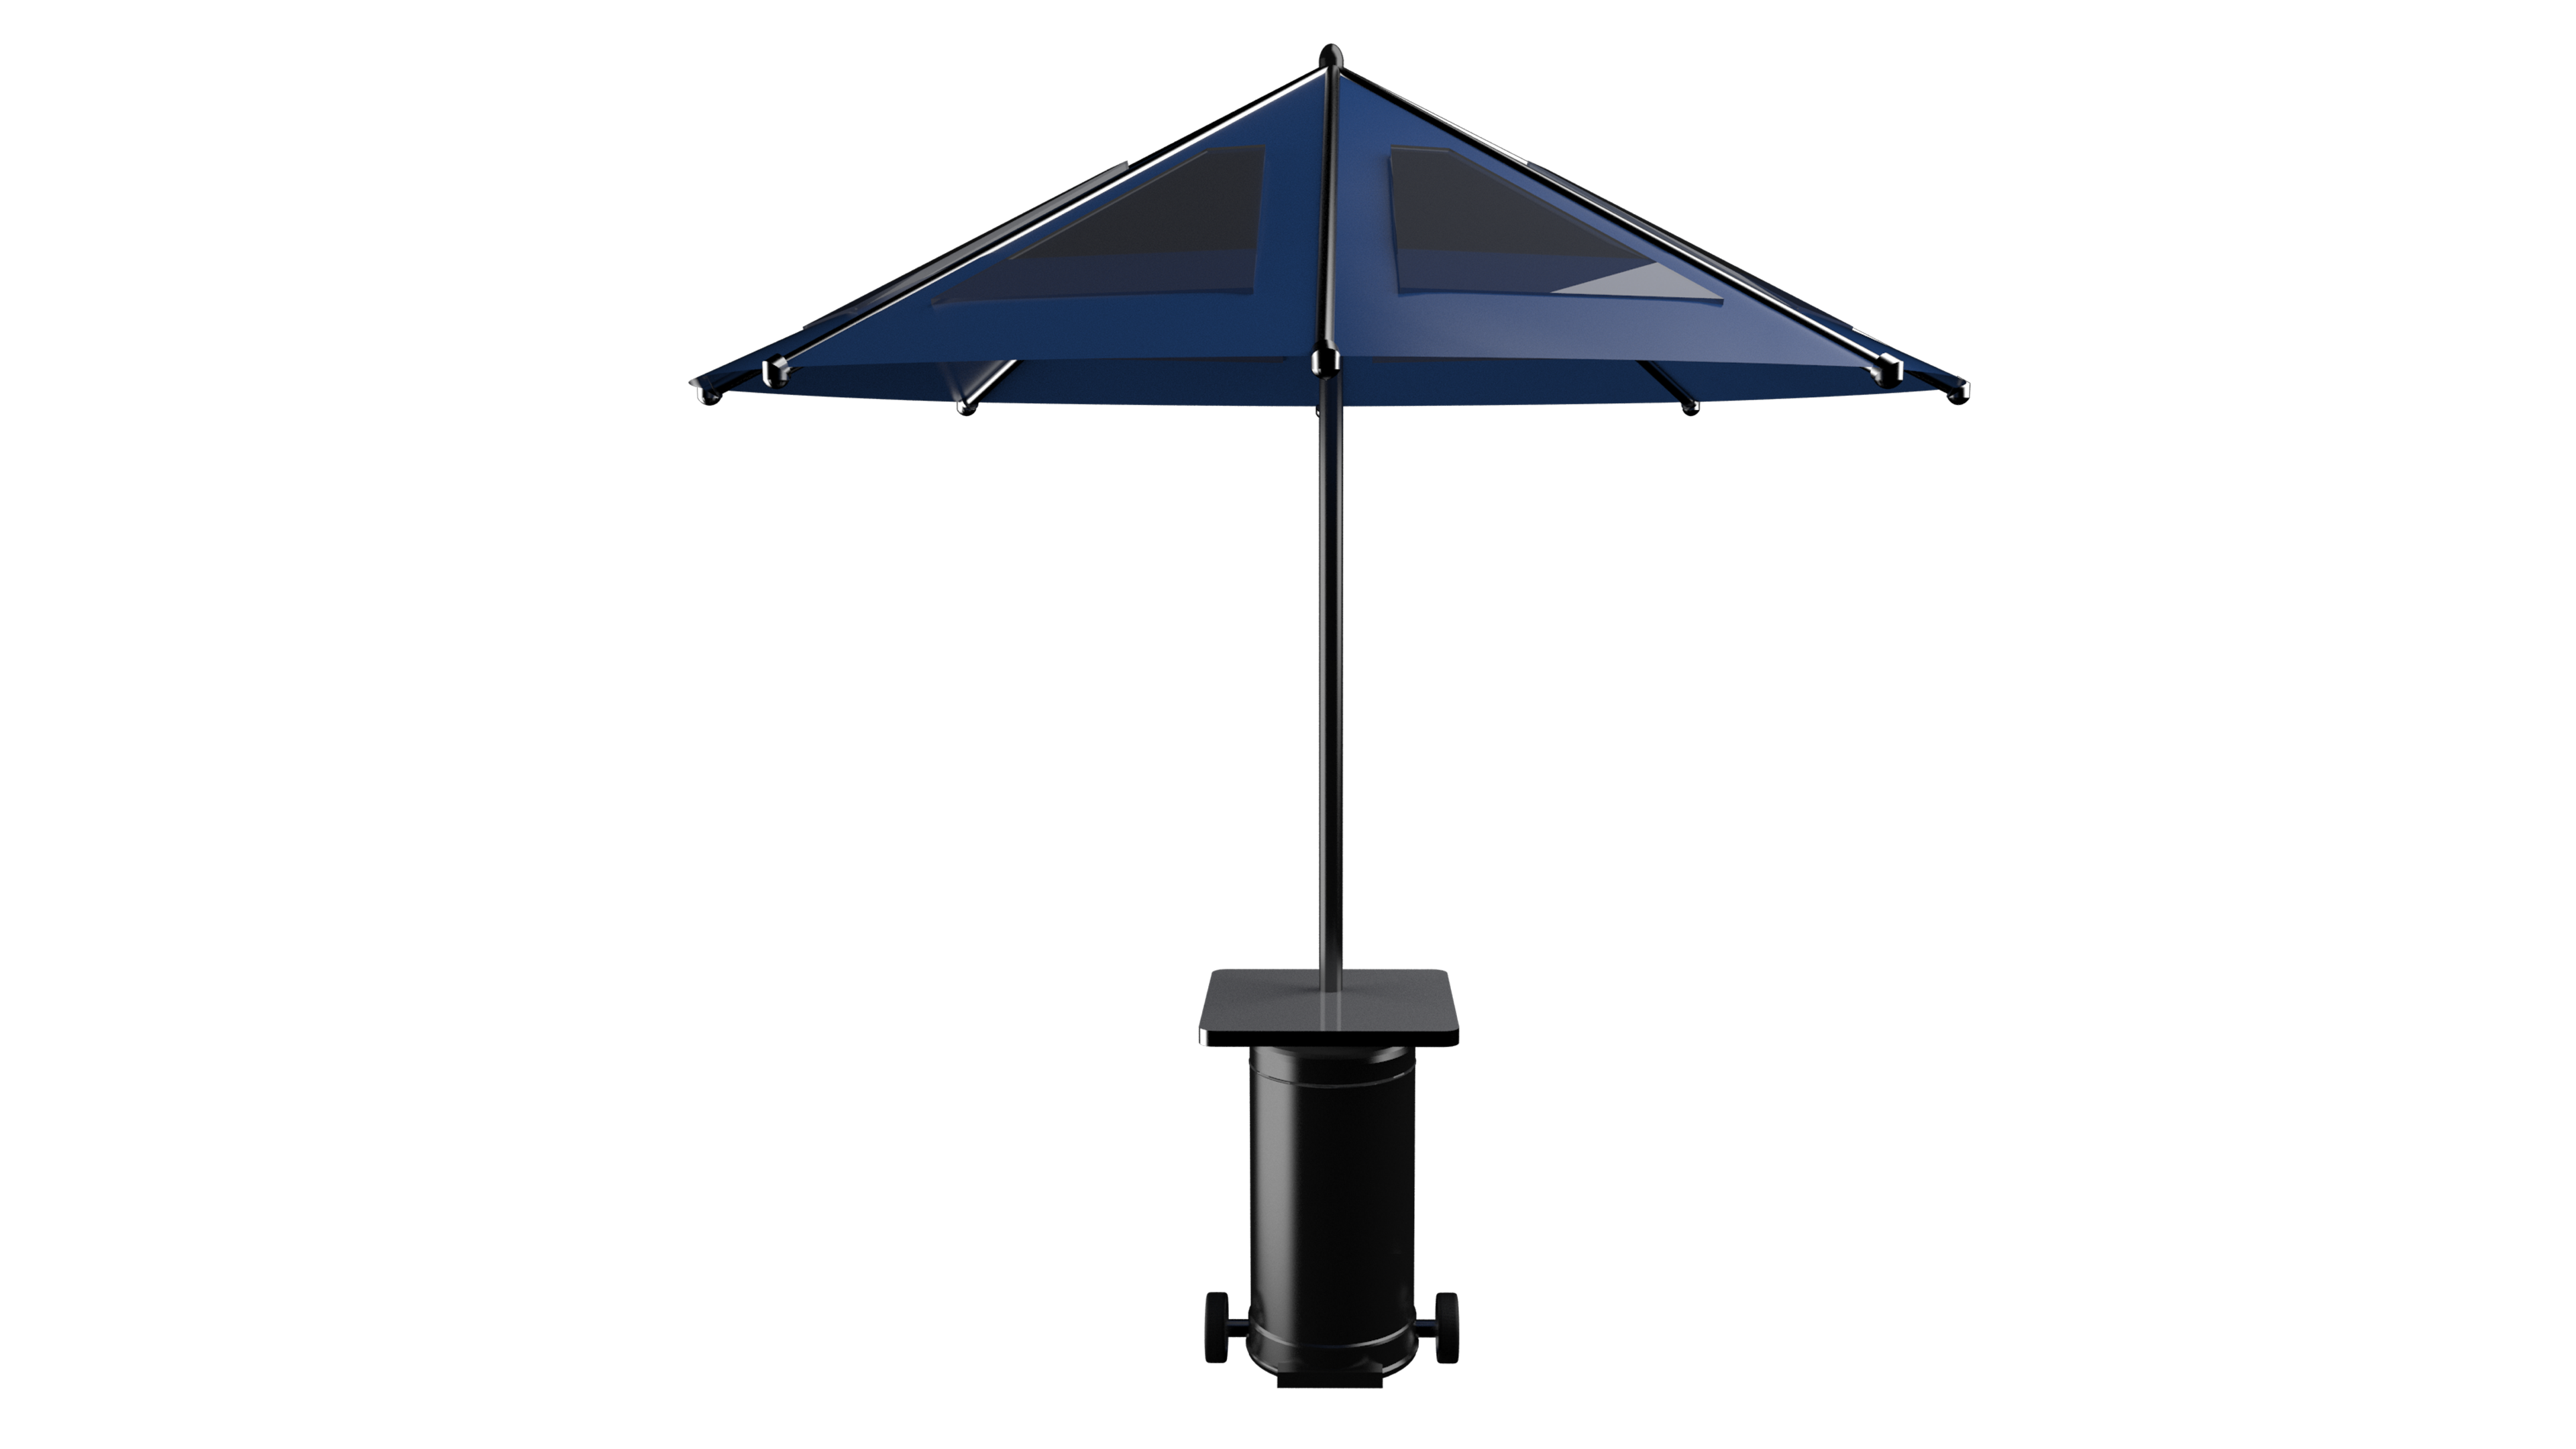 3D representation of the new umbrella patent